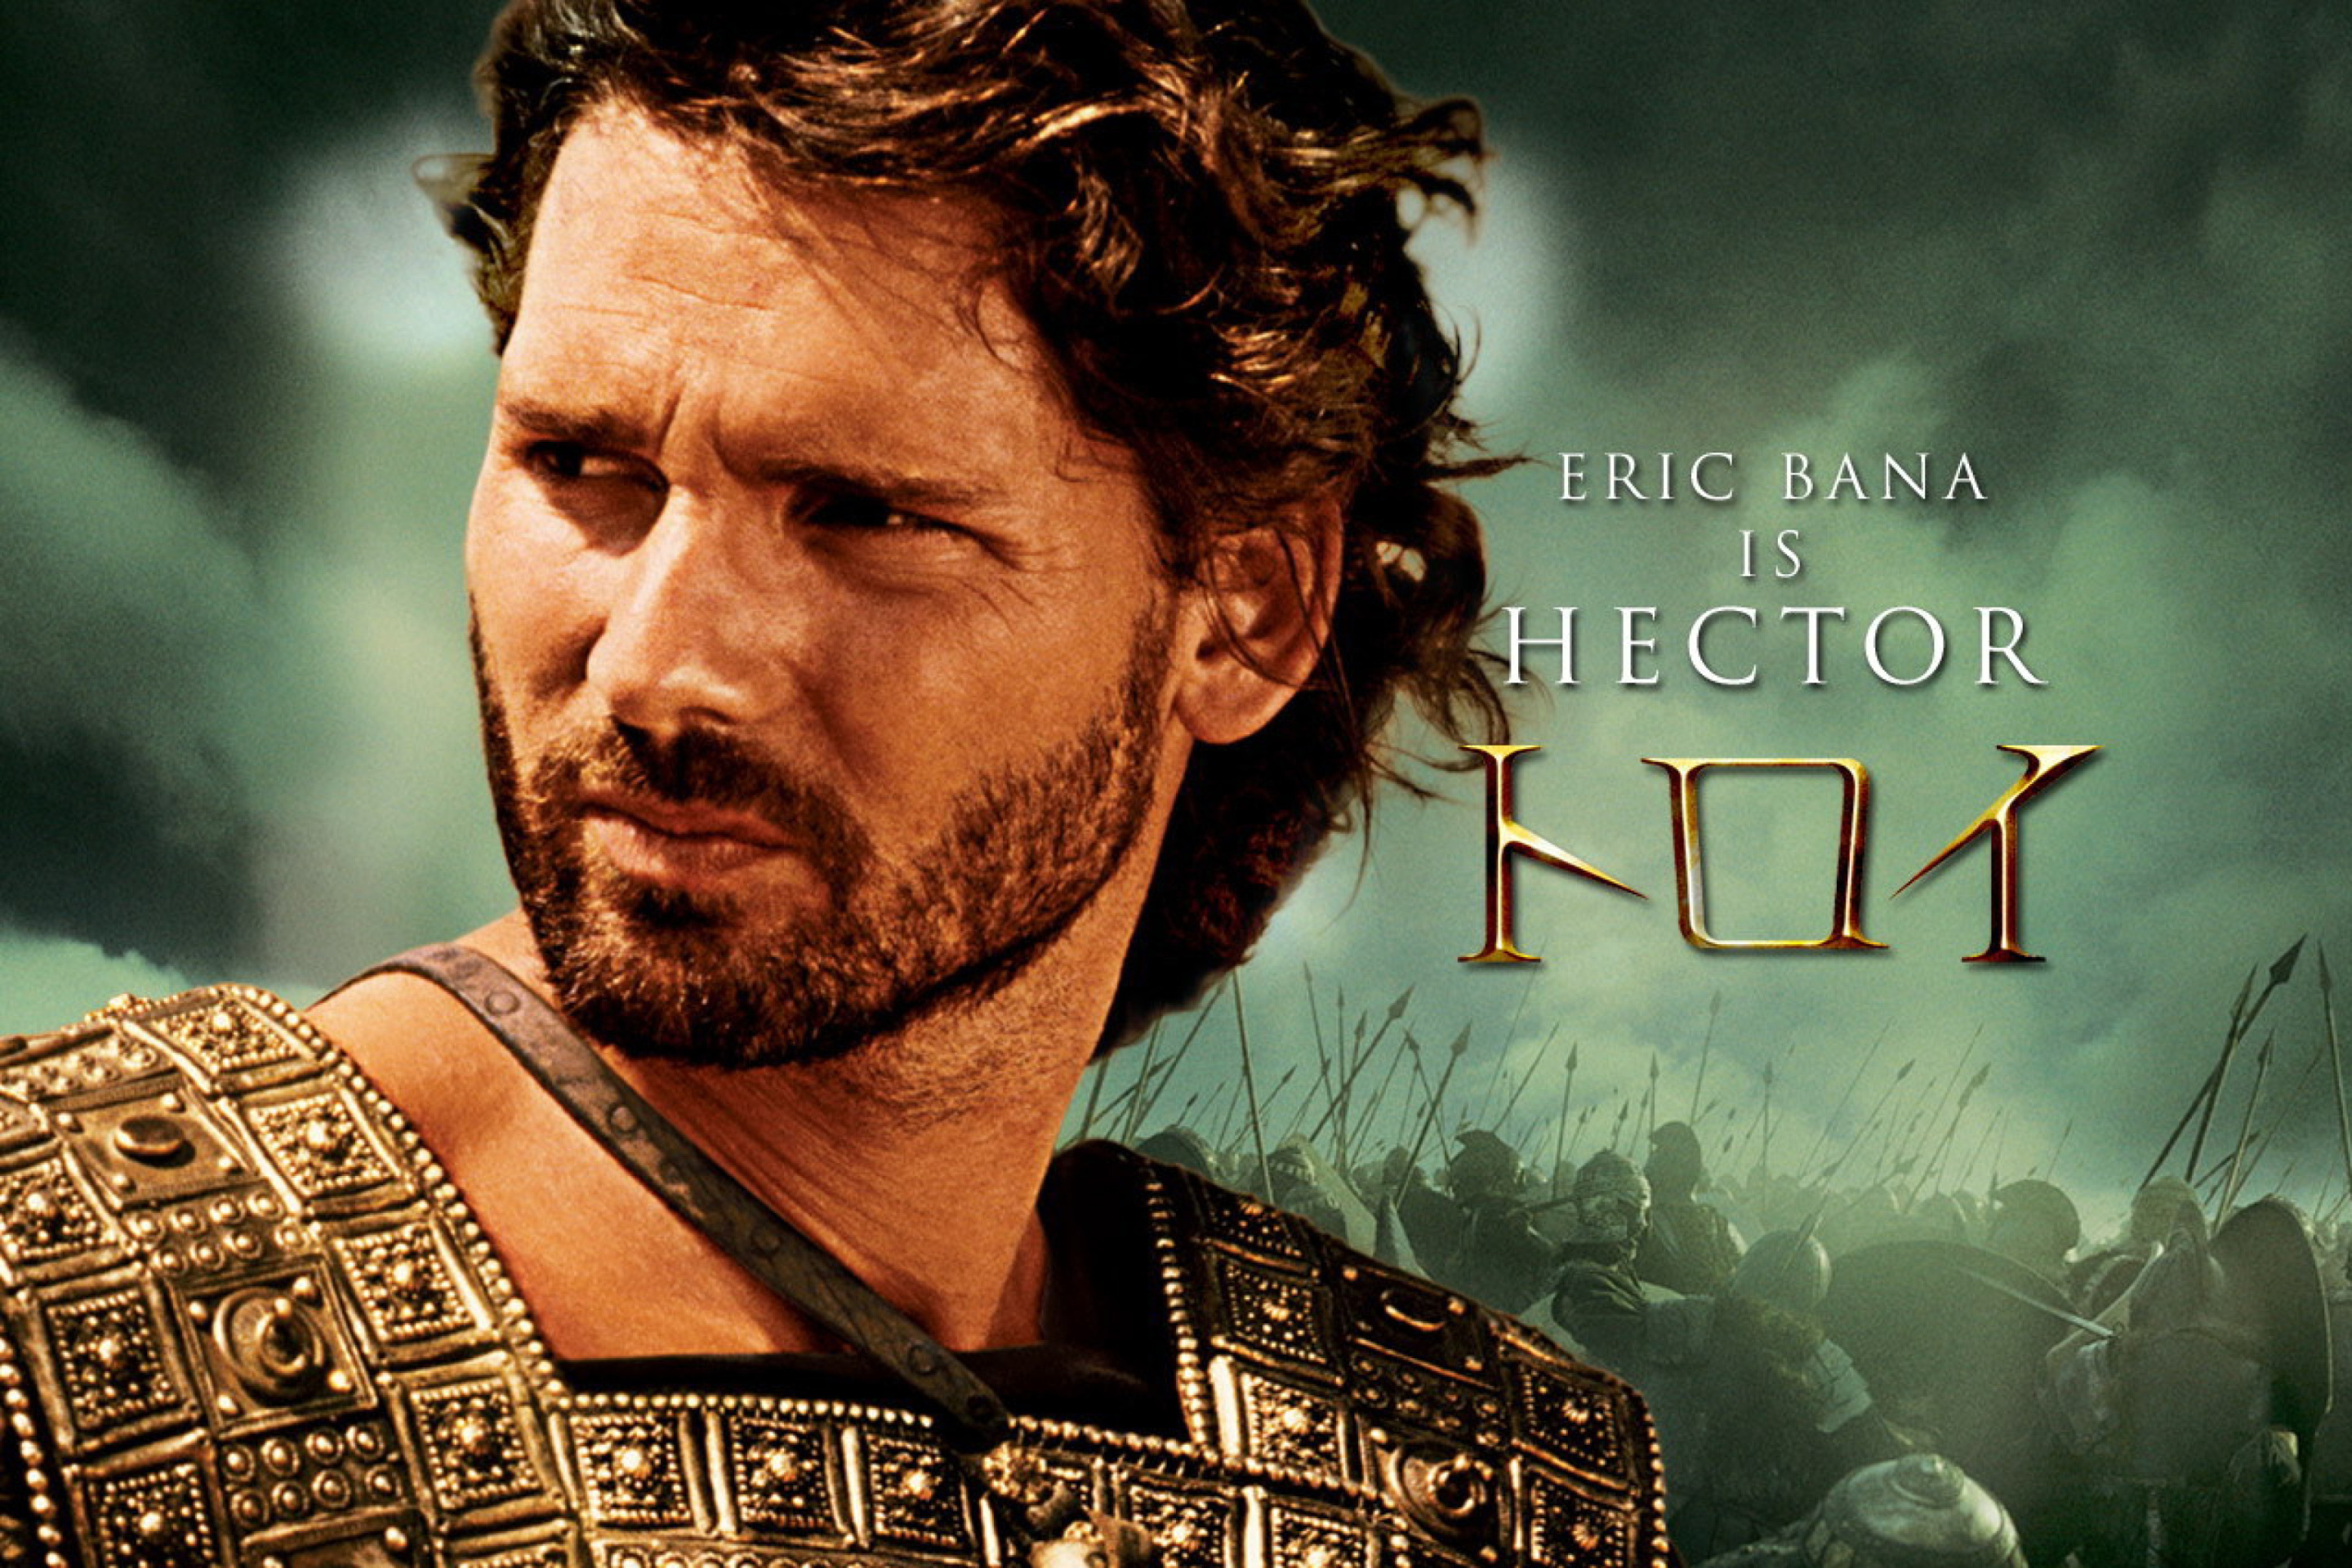 Sfondi Eric Bana as Hector in Troy 2880x1920